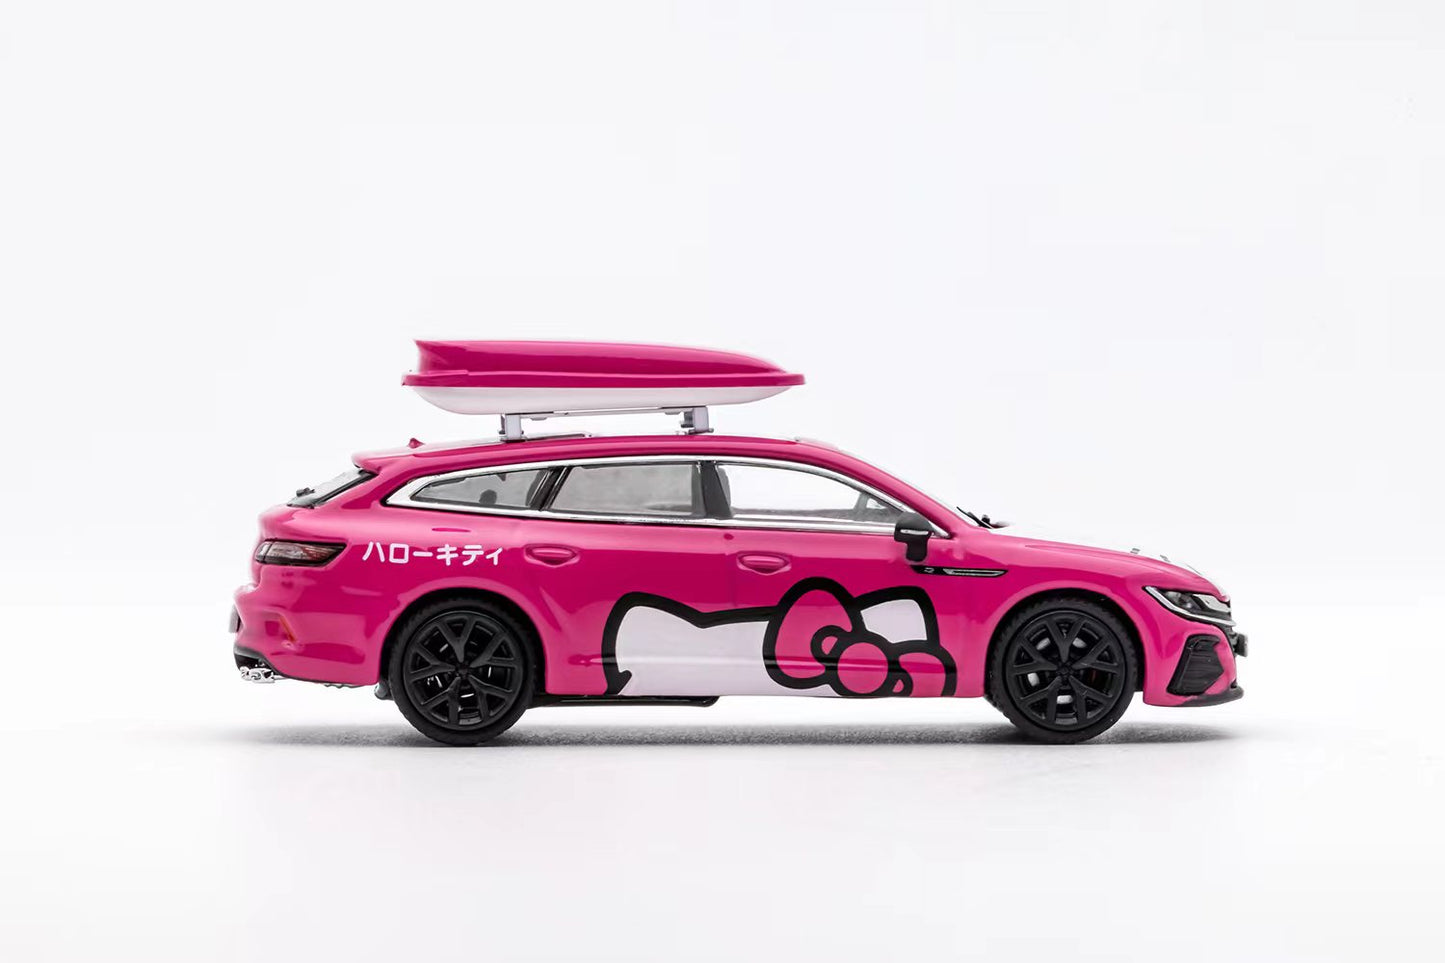 GCD 1/64 Volkswagen Arteon R in Pink Hello Kitty Livery